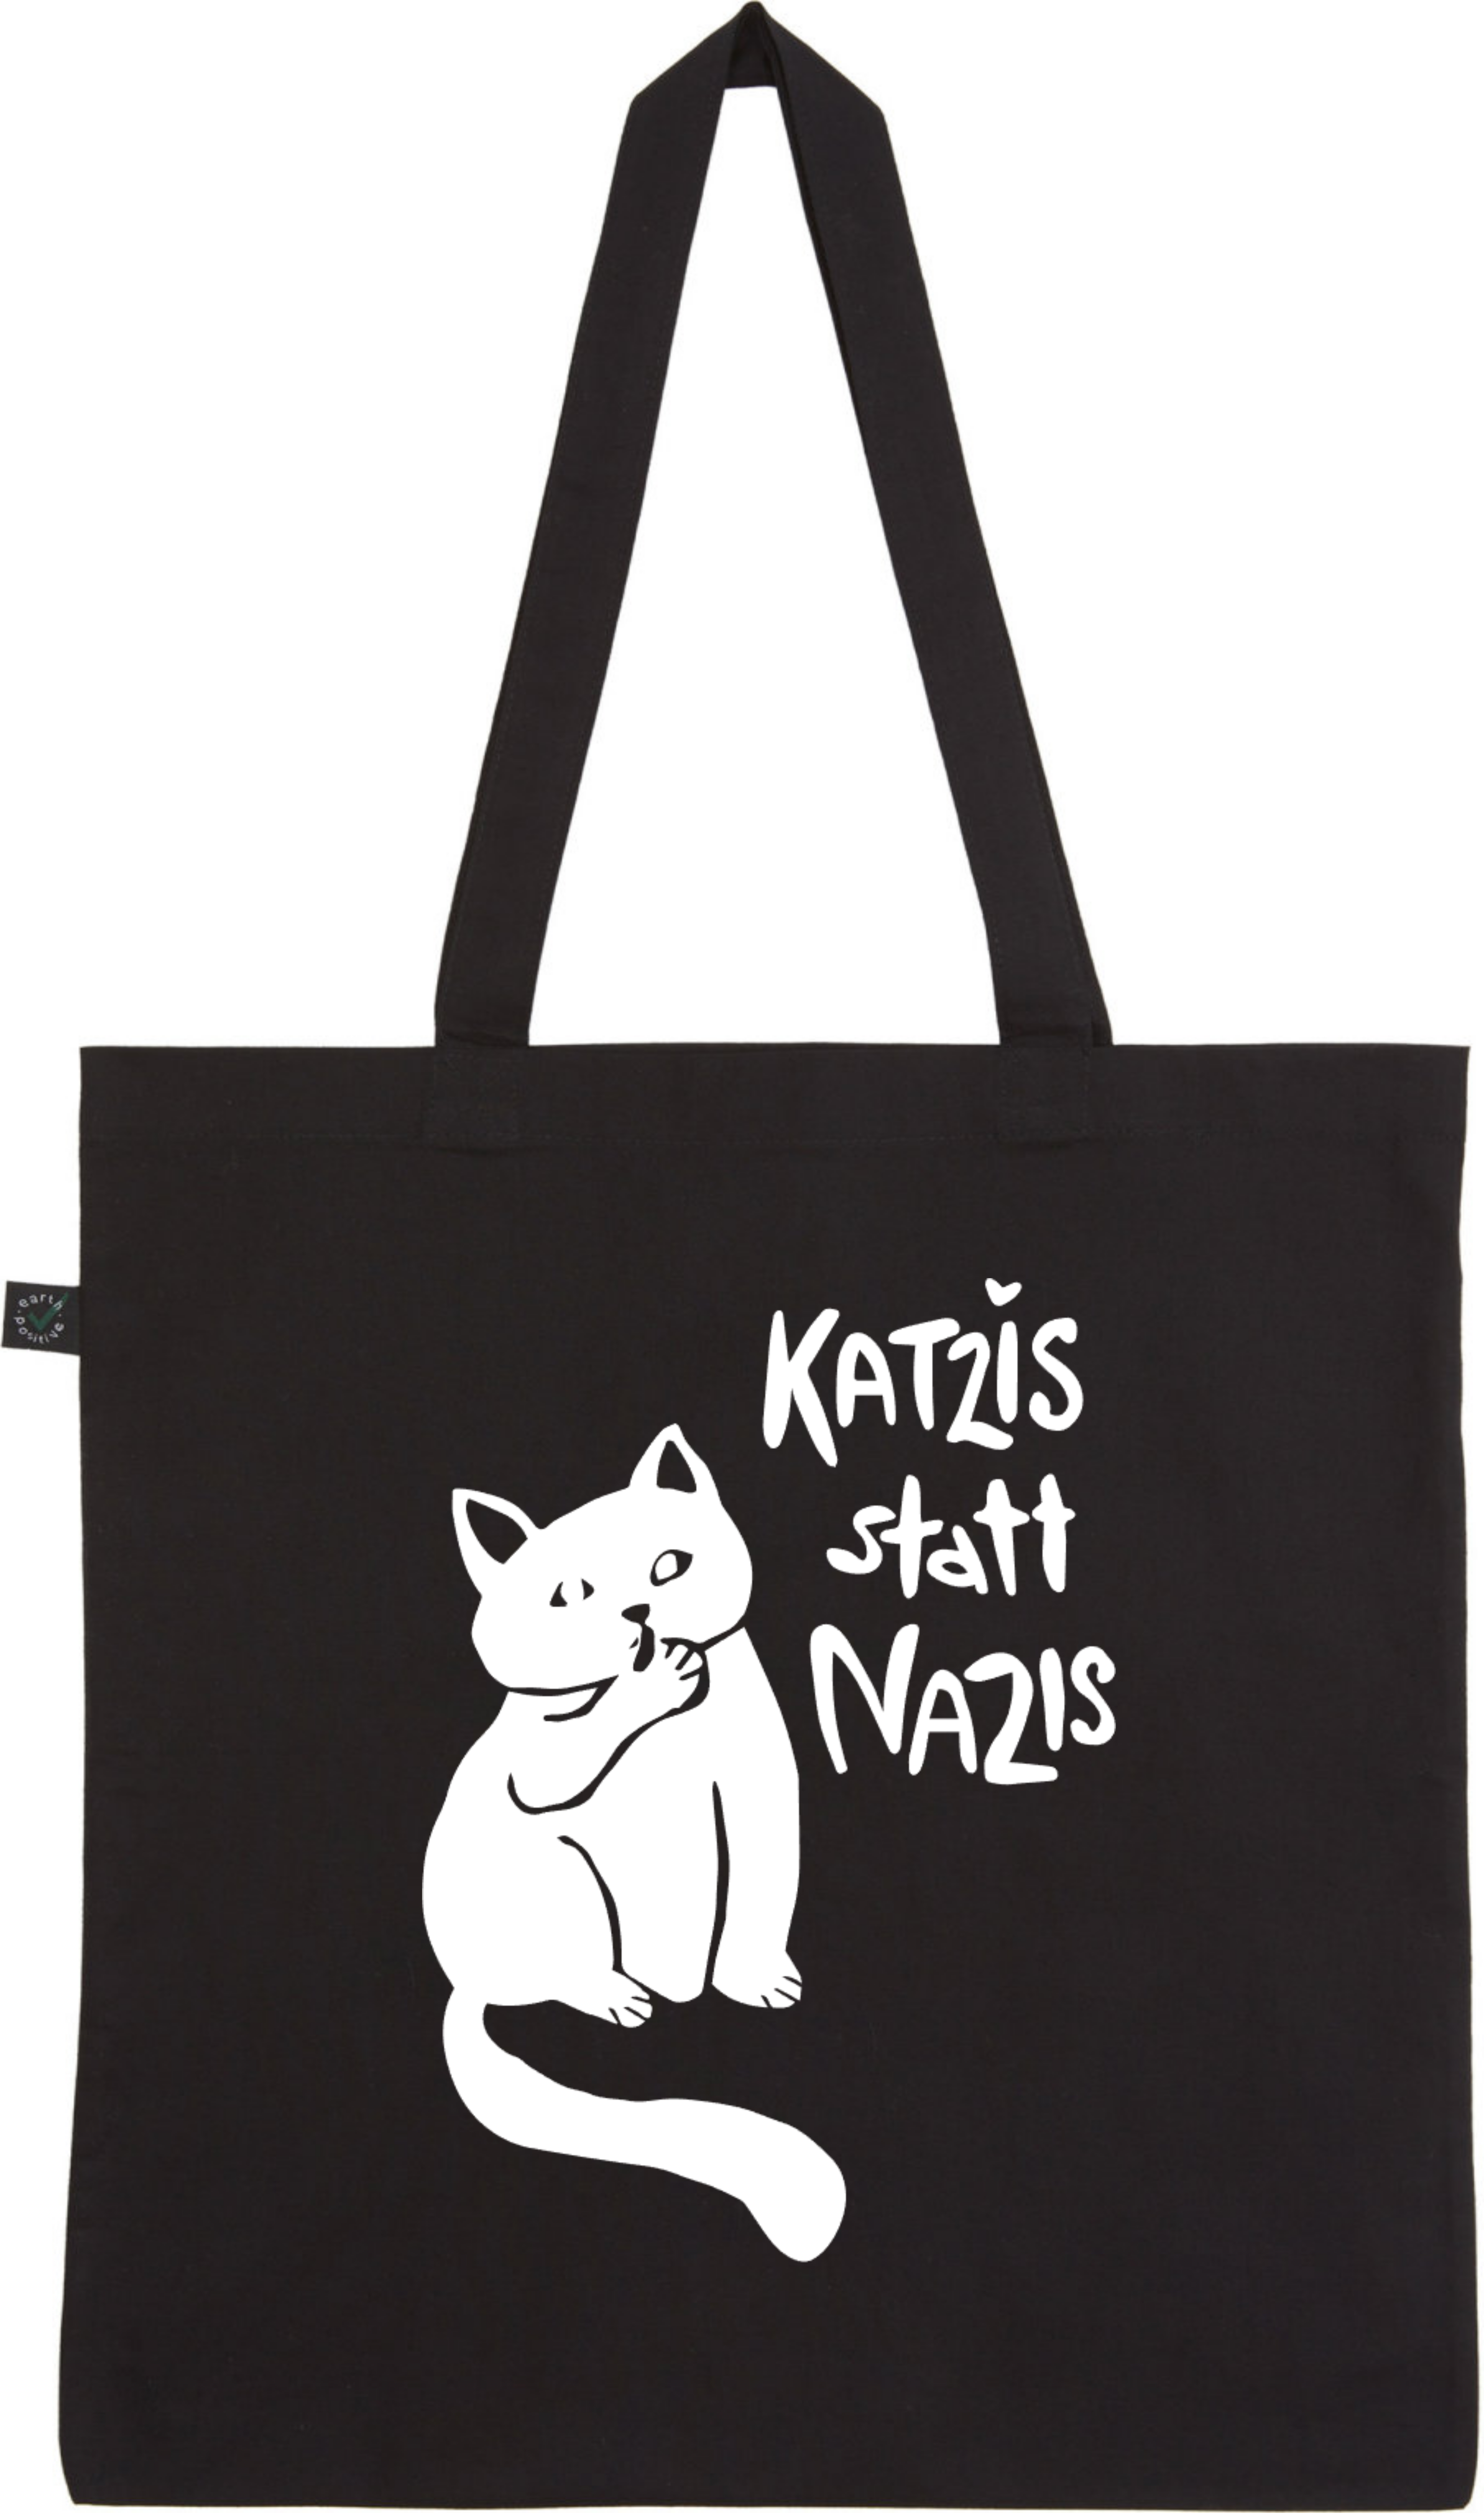 Katzis statt Nazis | Tragetasche / Tote Bag